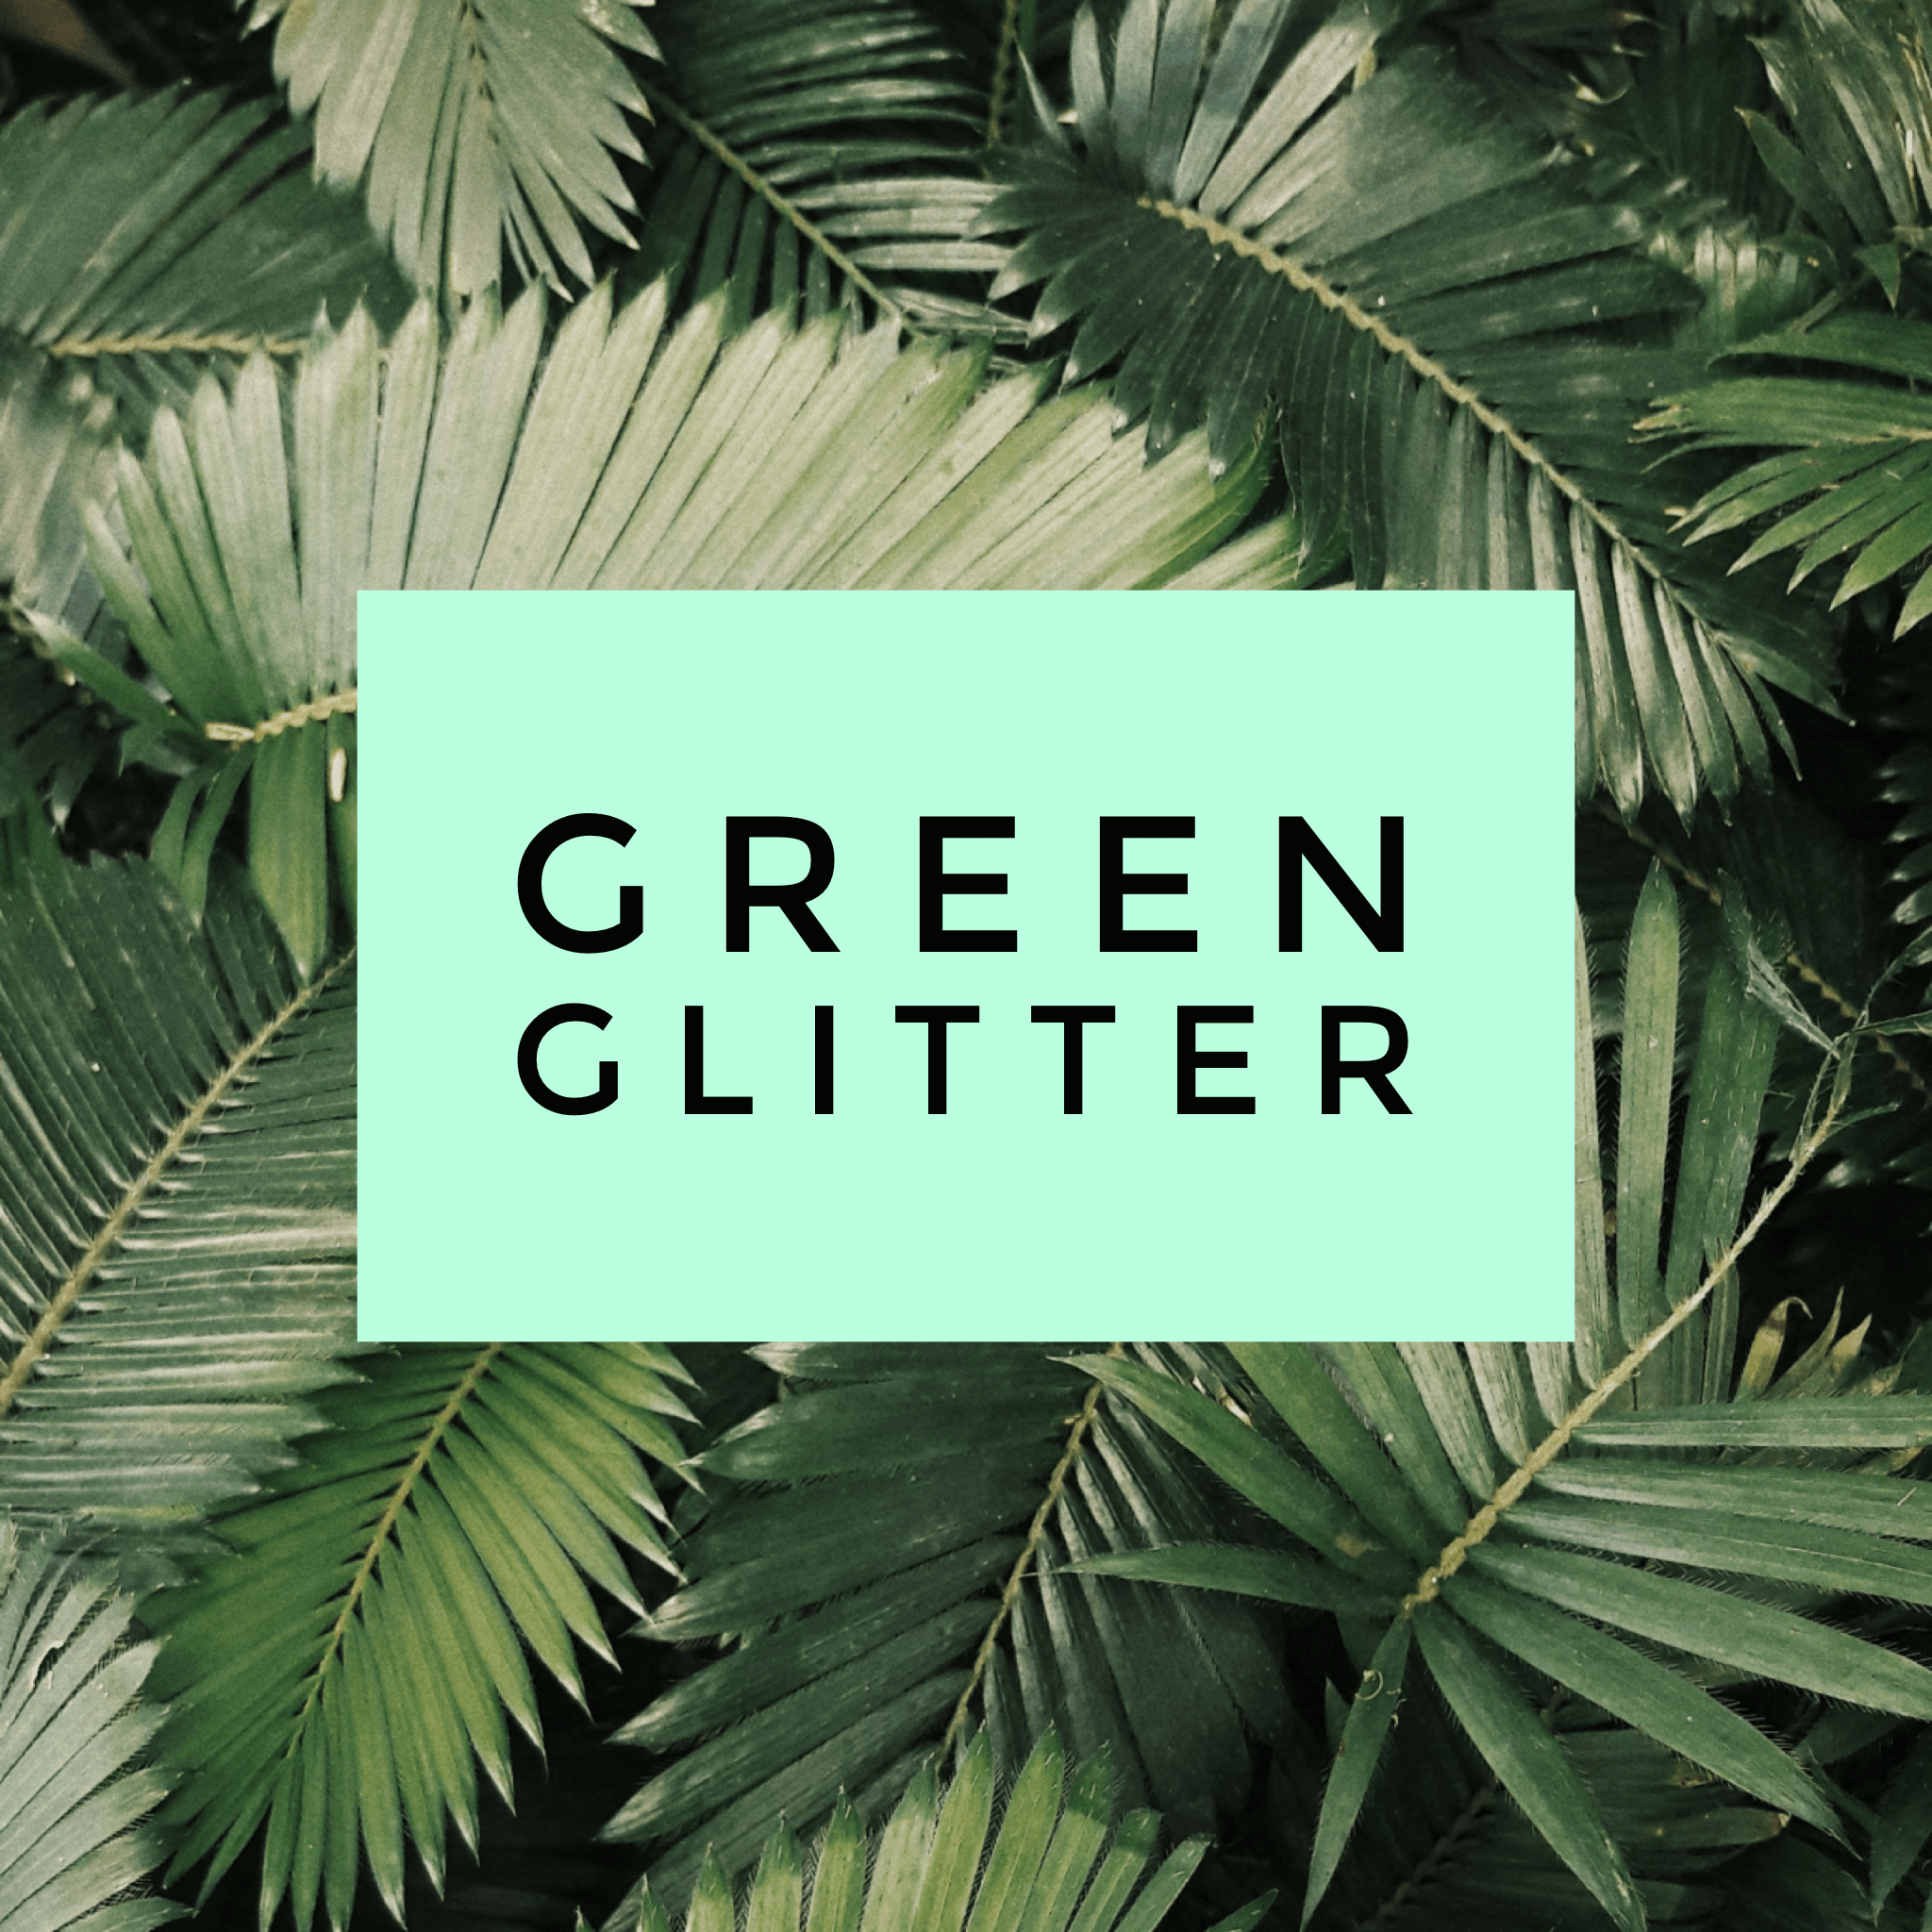 green glitter backgrounds tumblr